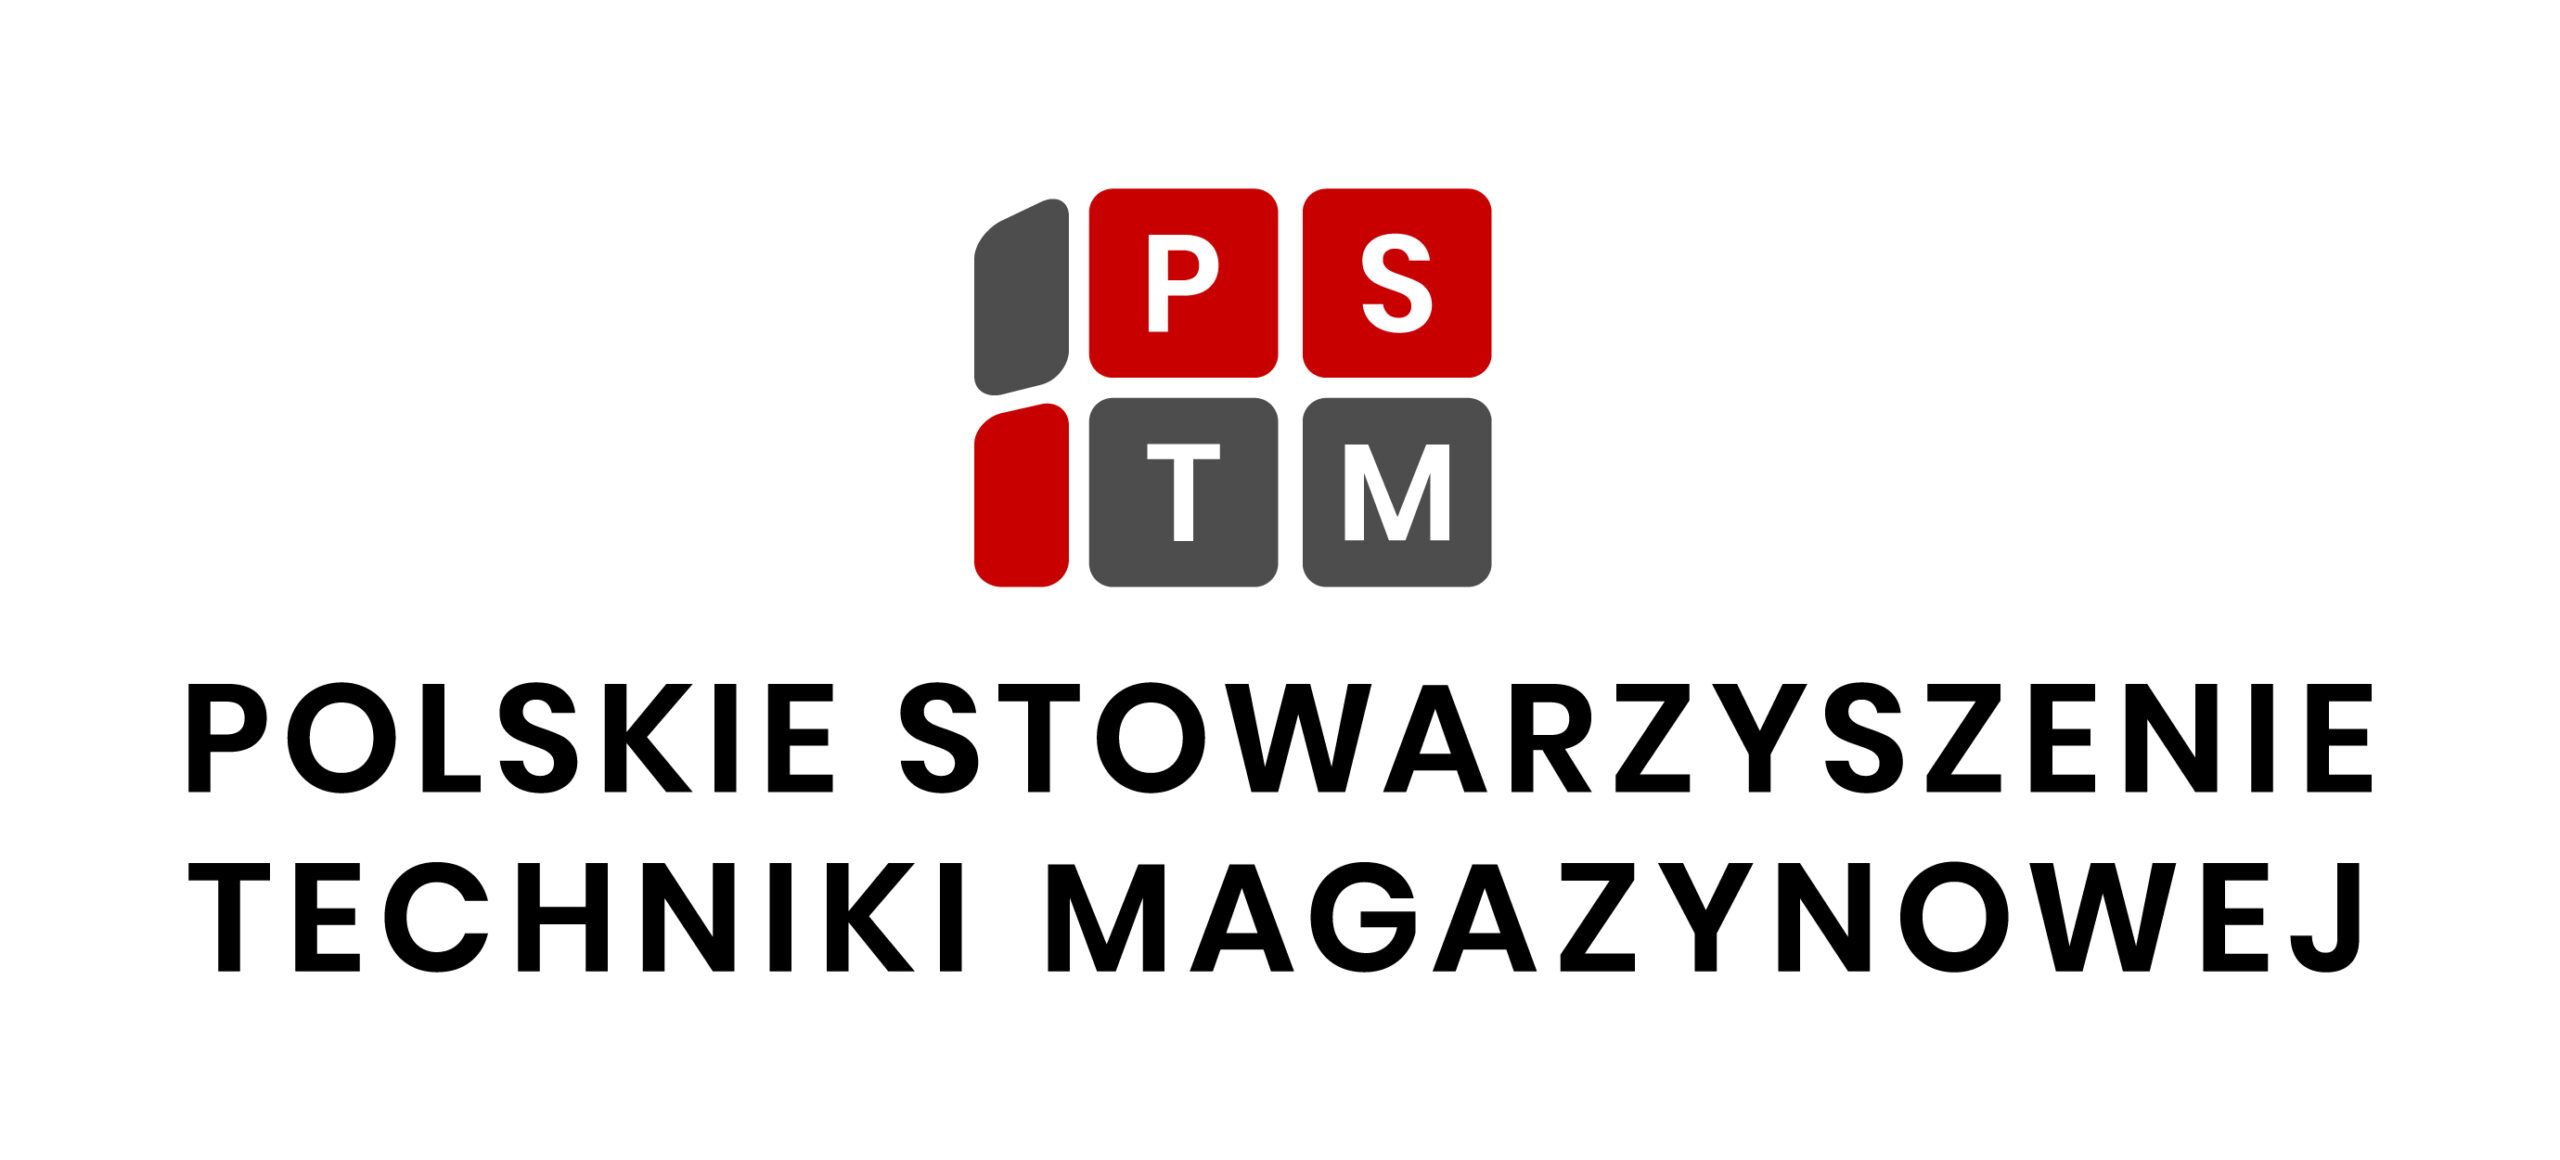 Polskie Stowarzyszenie Techniki Magazynowej PSTM